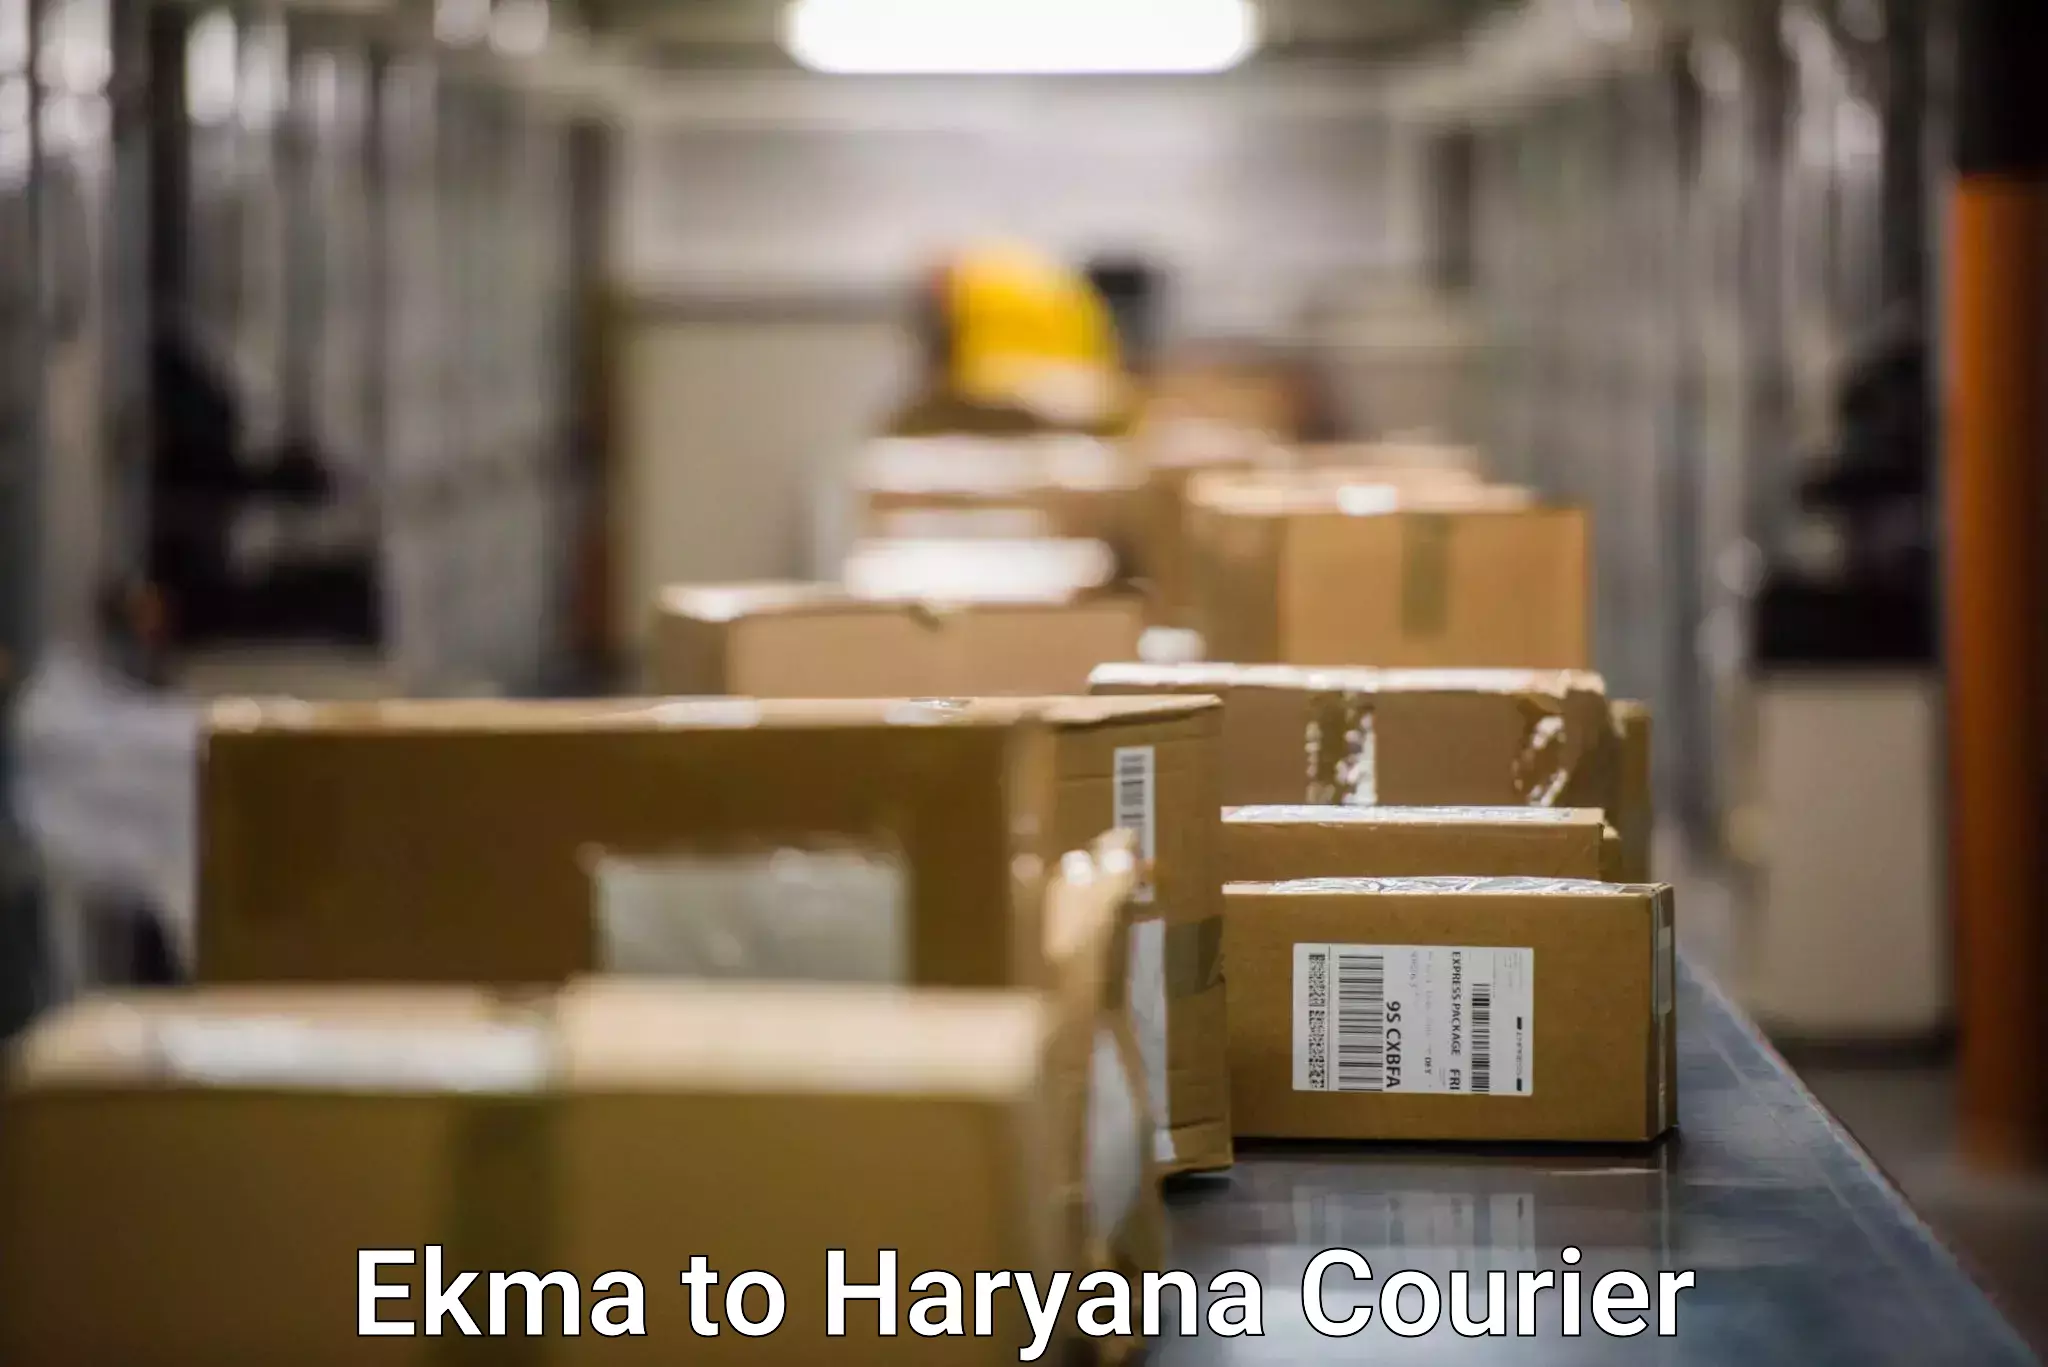 Budget-friendly shipping Ekma to Gurugram